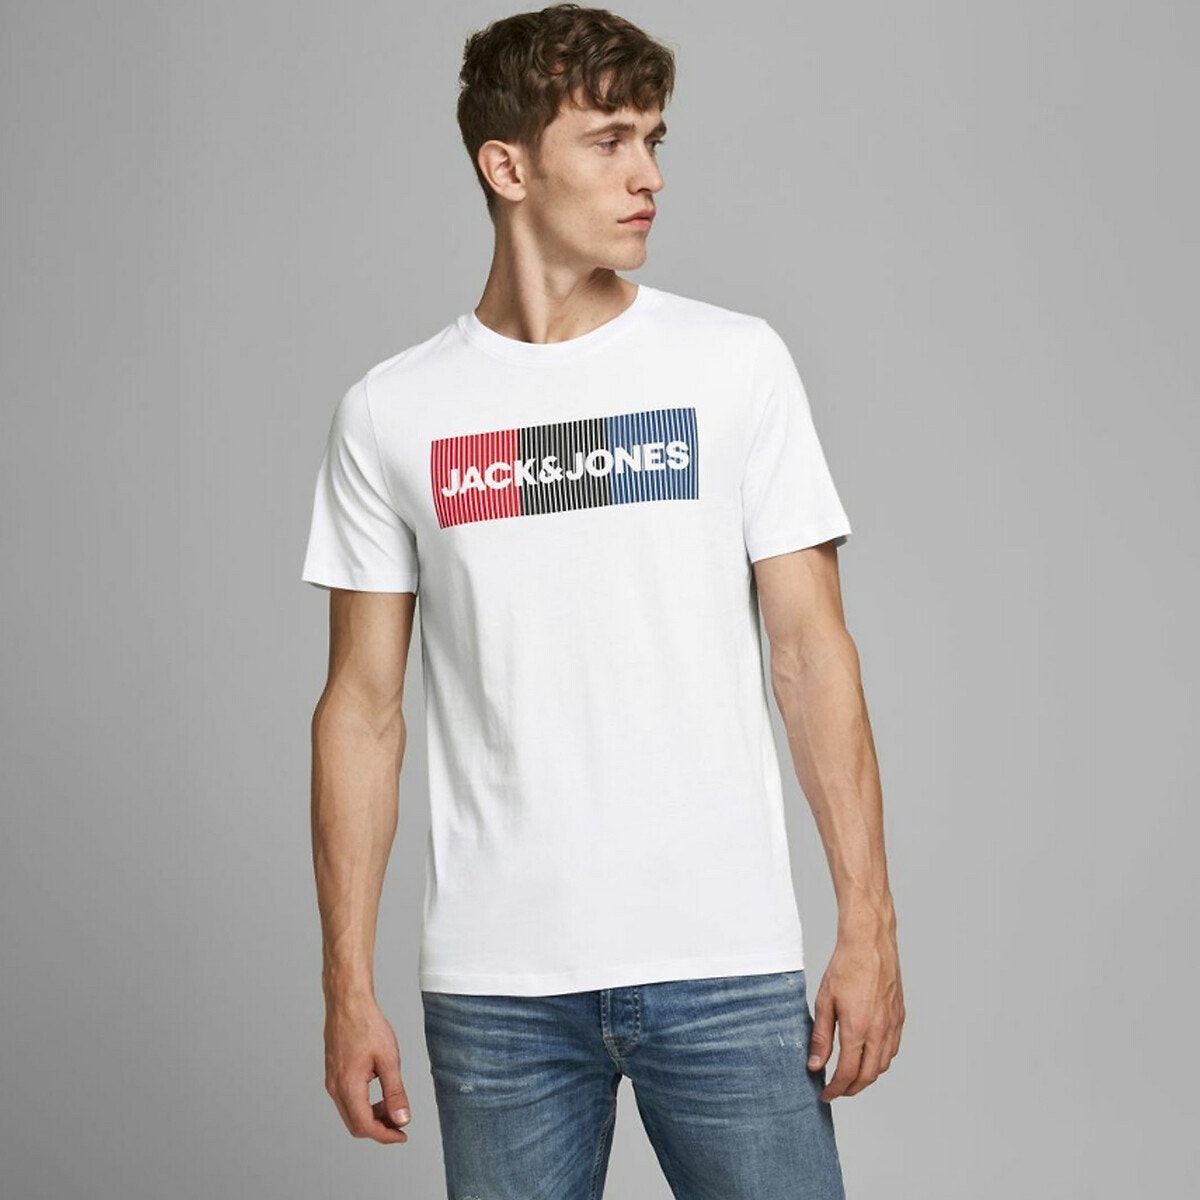 ΑΝΔΡΑΣ | Μπλούζες & Πουκάμισα | T-shirts Κοντομάνικο T-shirt, Corp Logo